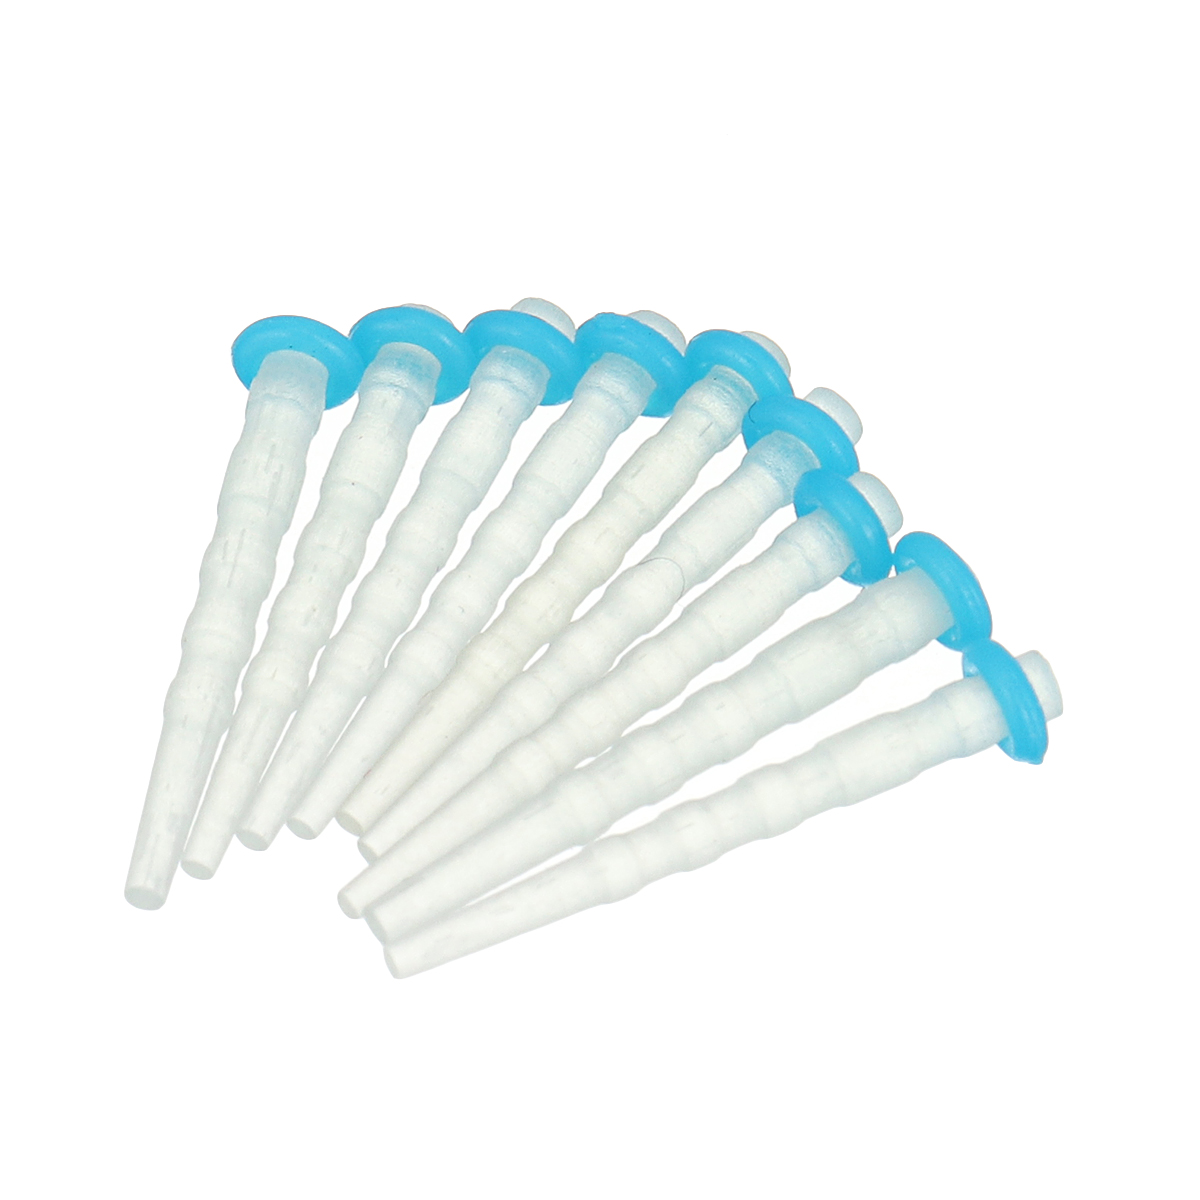 

200Pcs Dental Fiber Post Glass Quartz Teeth Restorative 1.0 1.2 1.4 1.6mm Posts Tools